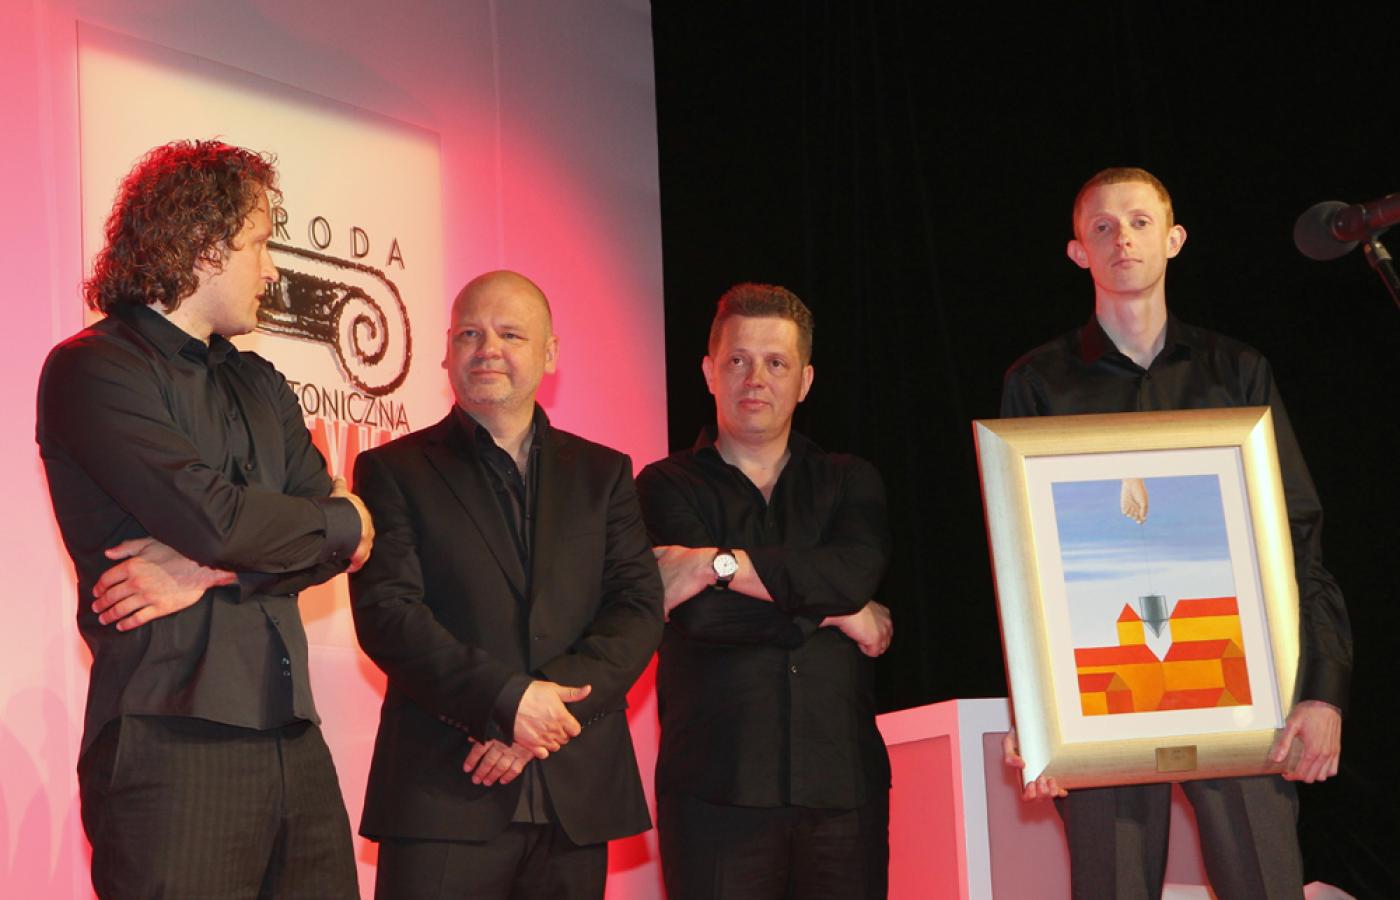 Laureaci Grand Prix, od lewej: Wojciech Subalski, Dariusz Heman, Piotr Śmierzewski i Adam Kulesza z HS99 prezentują nagrodę – obraz autorstwa Mirosława Grynia.